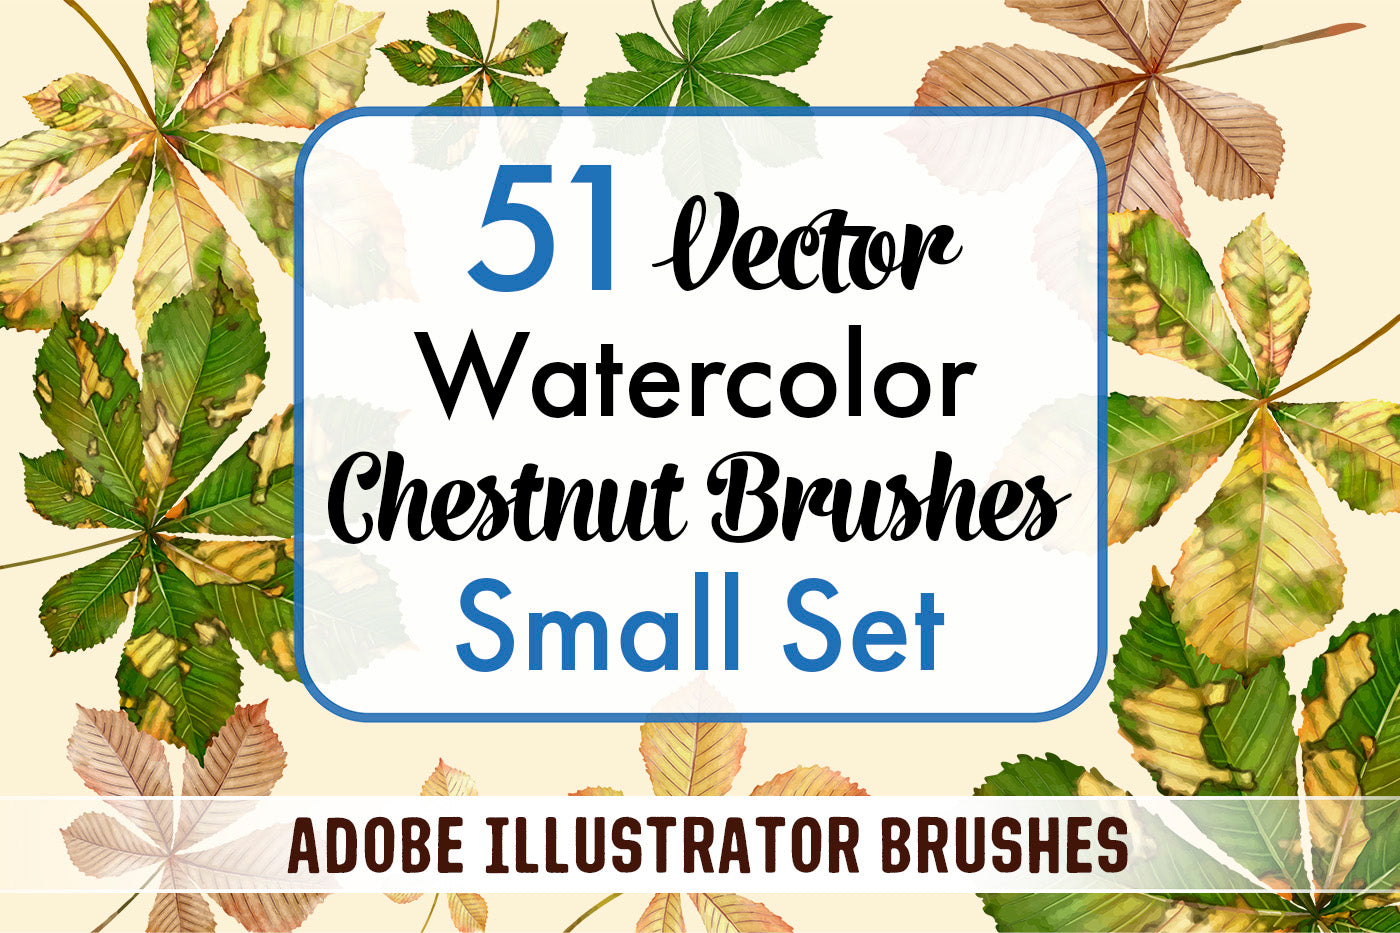 Chestnut Brushes Small Set - Illustrator Brushes